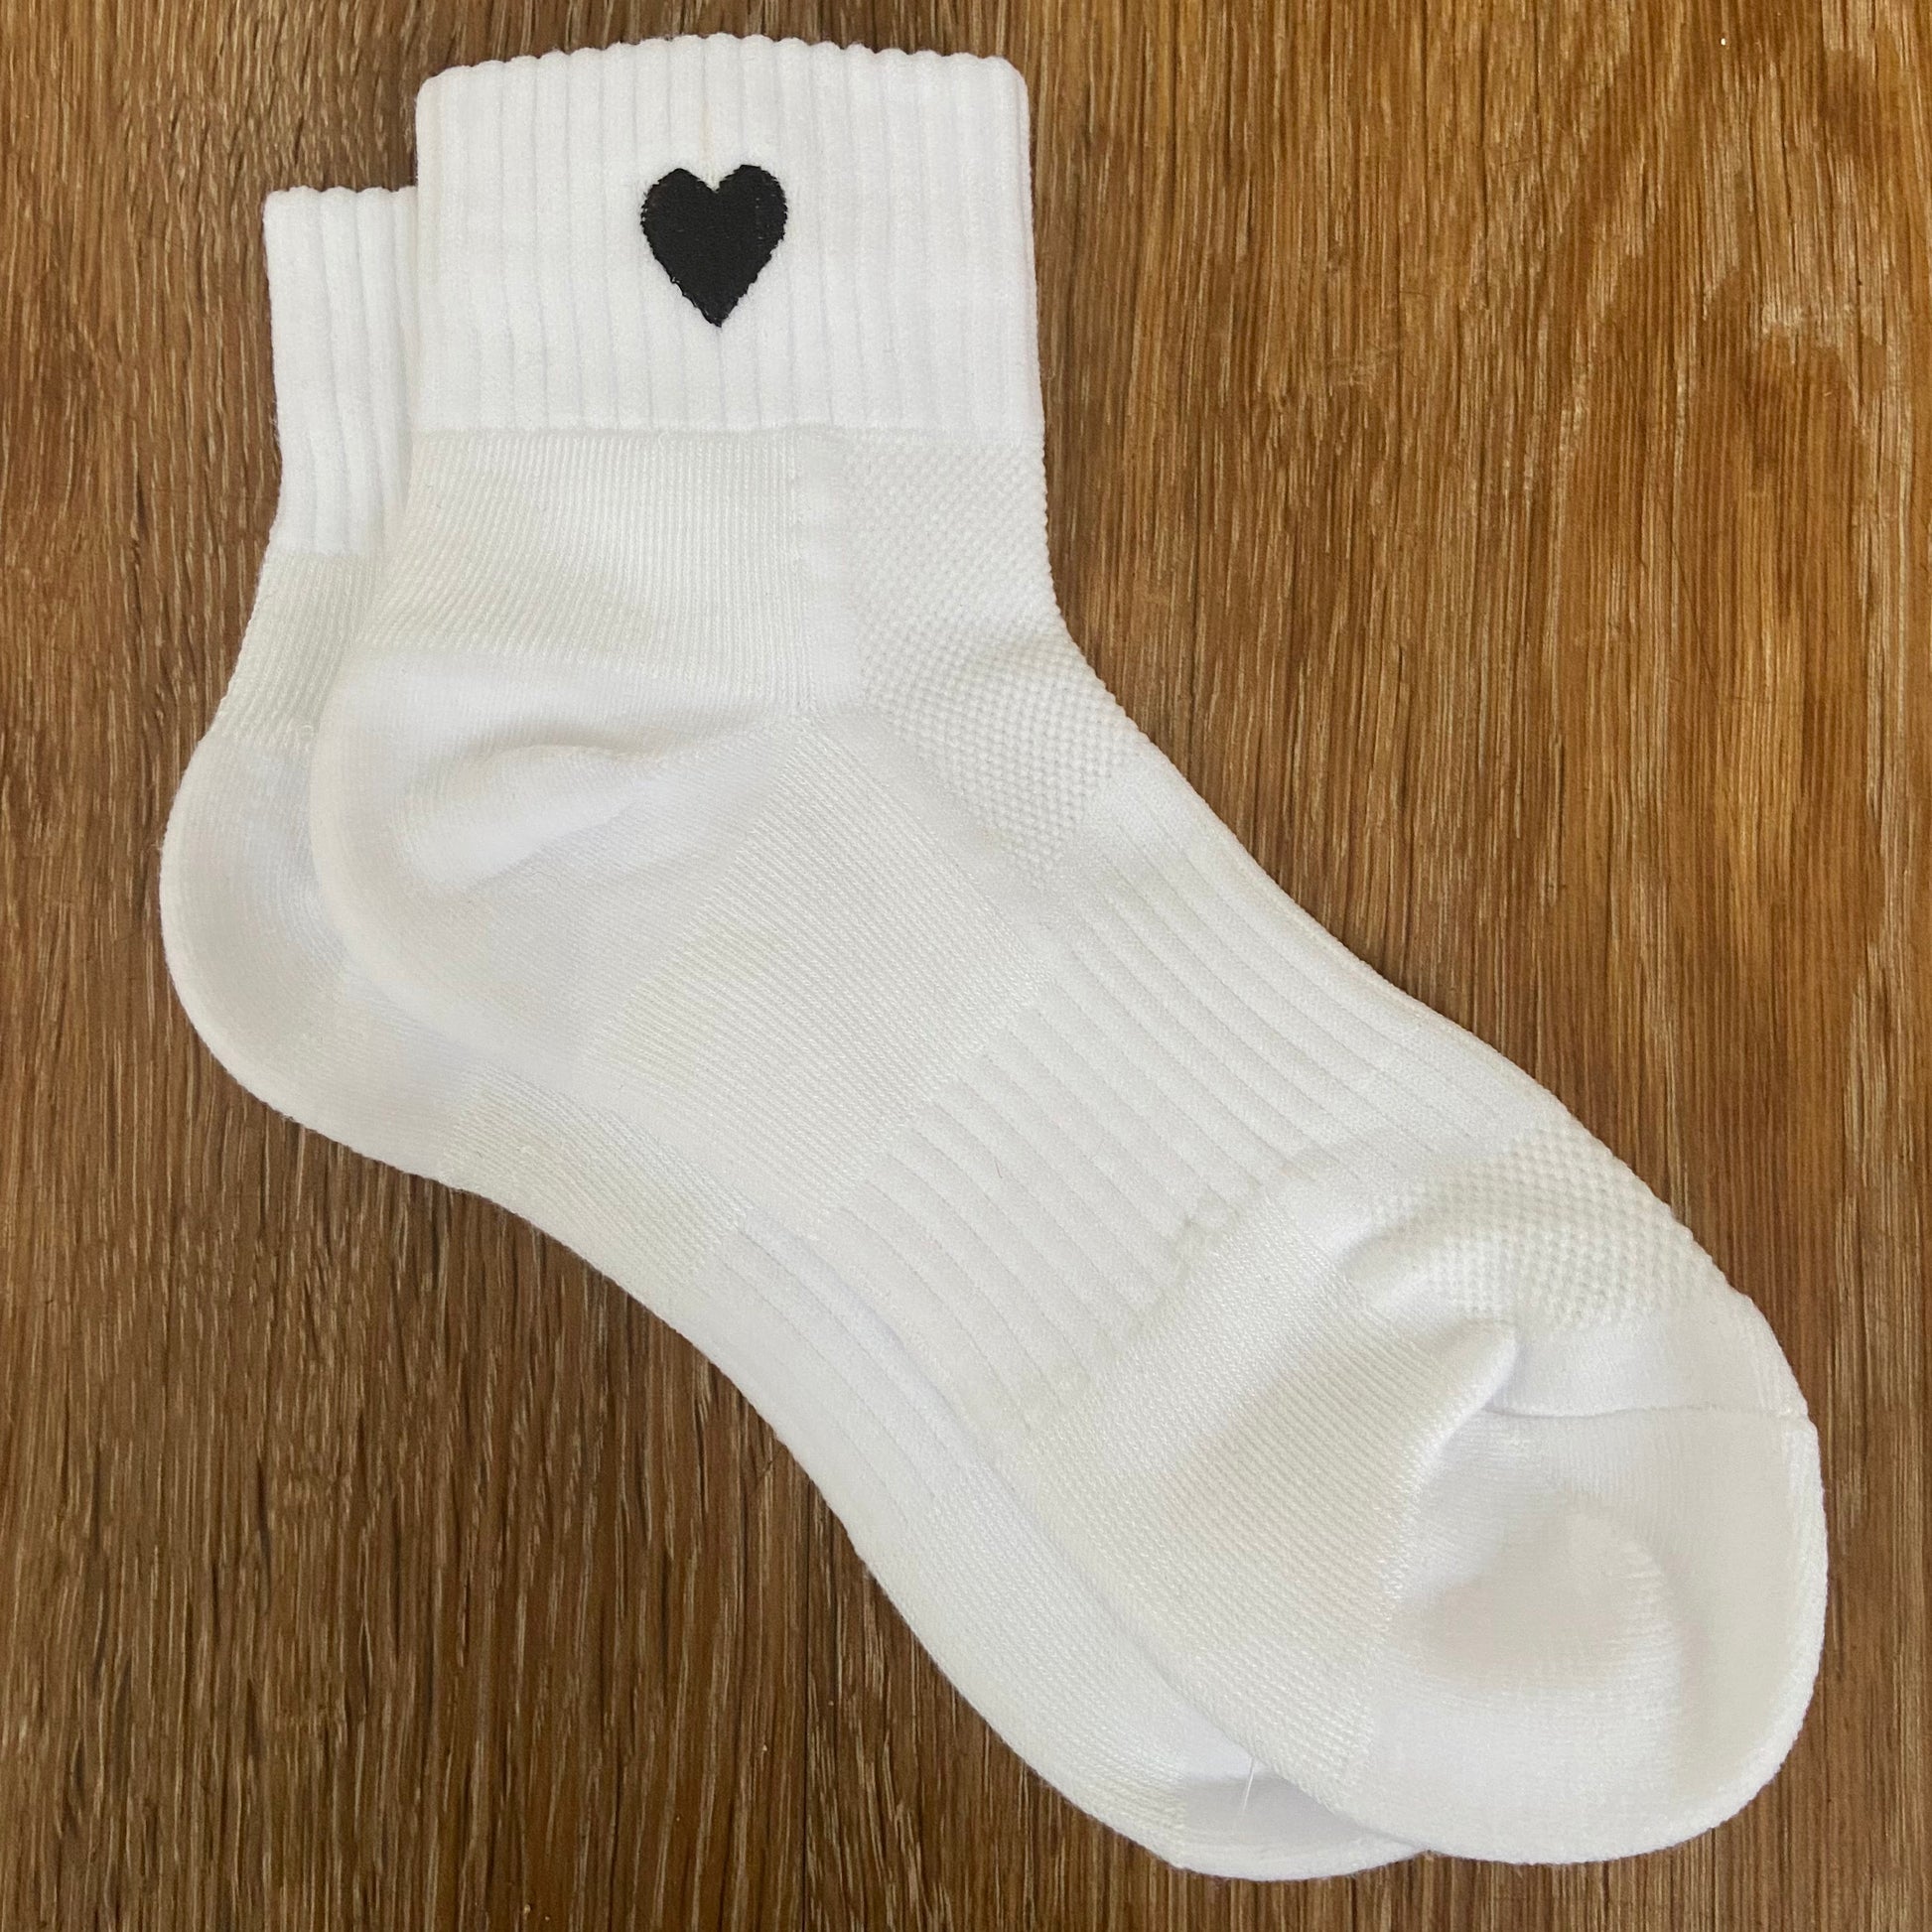 Embroidered Heart Quarter Socks